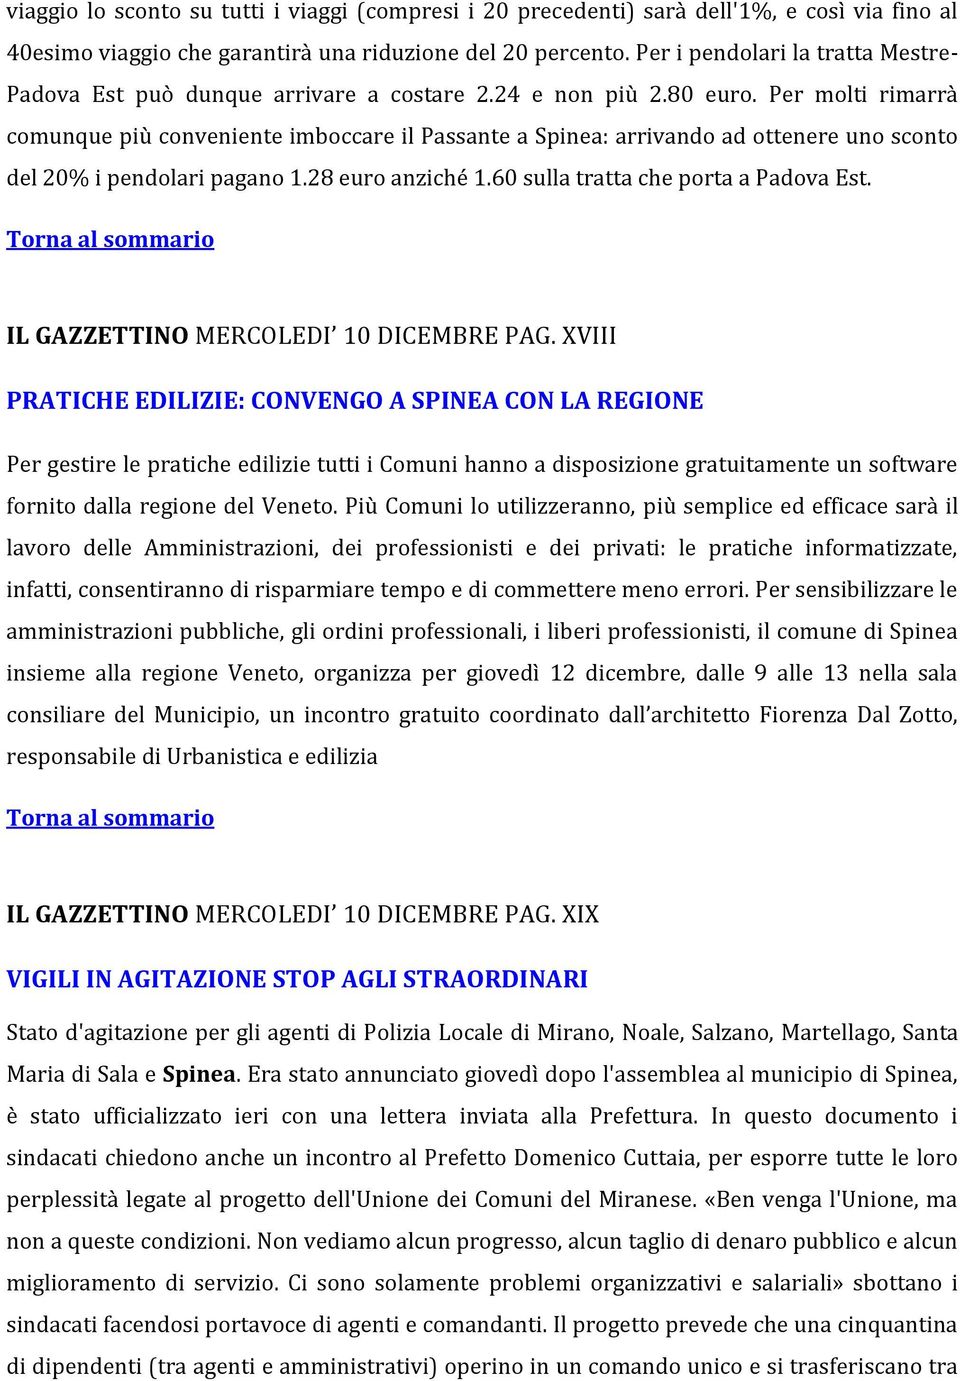 Per molti rimarrà comunque più conveniente imboccare il Passante a Spinea: arrivando ad ottenere uno sconto del 20% i pendolari pagano 1.28 euro anziché 1.60 sulla tratta che porta a Padova Est.